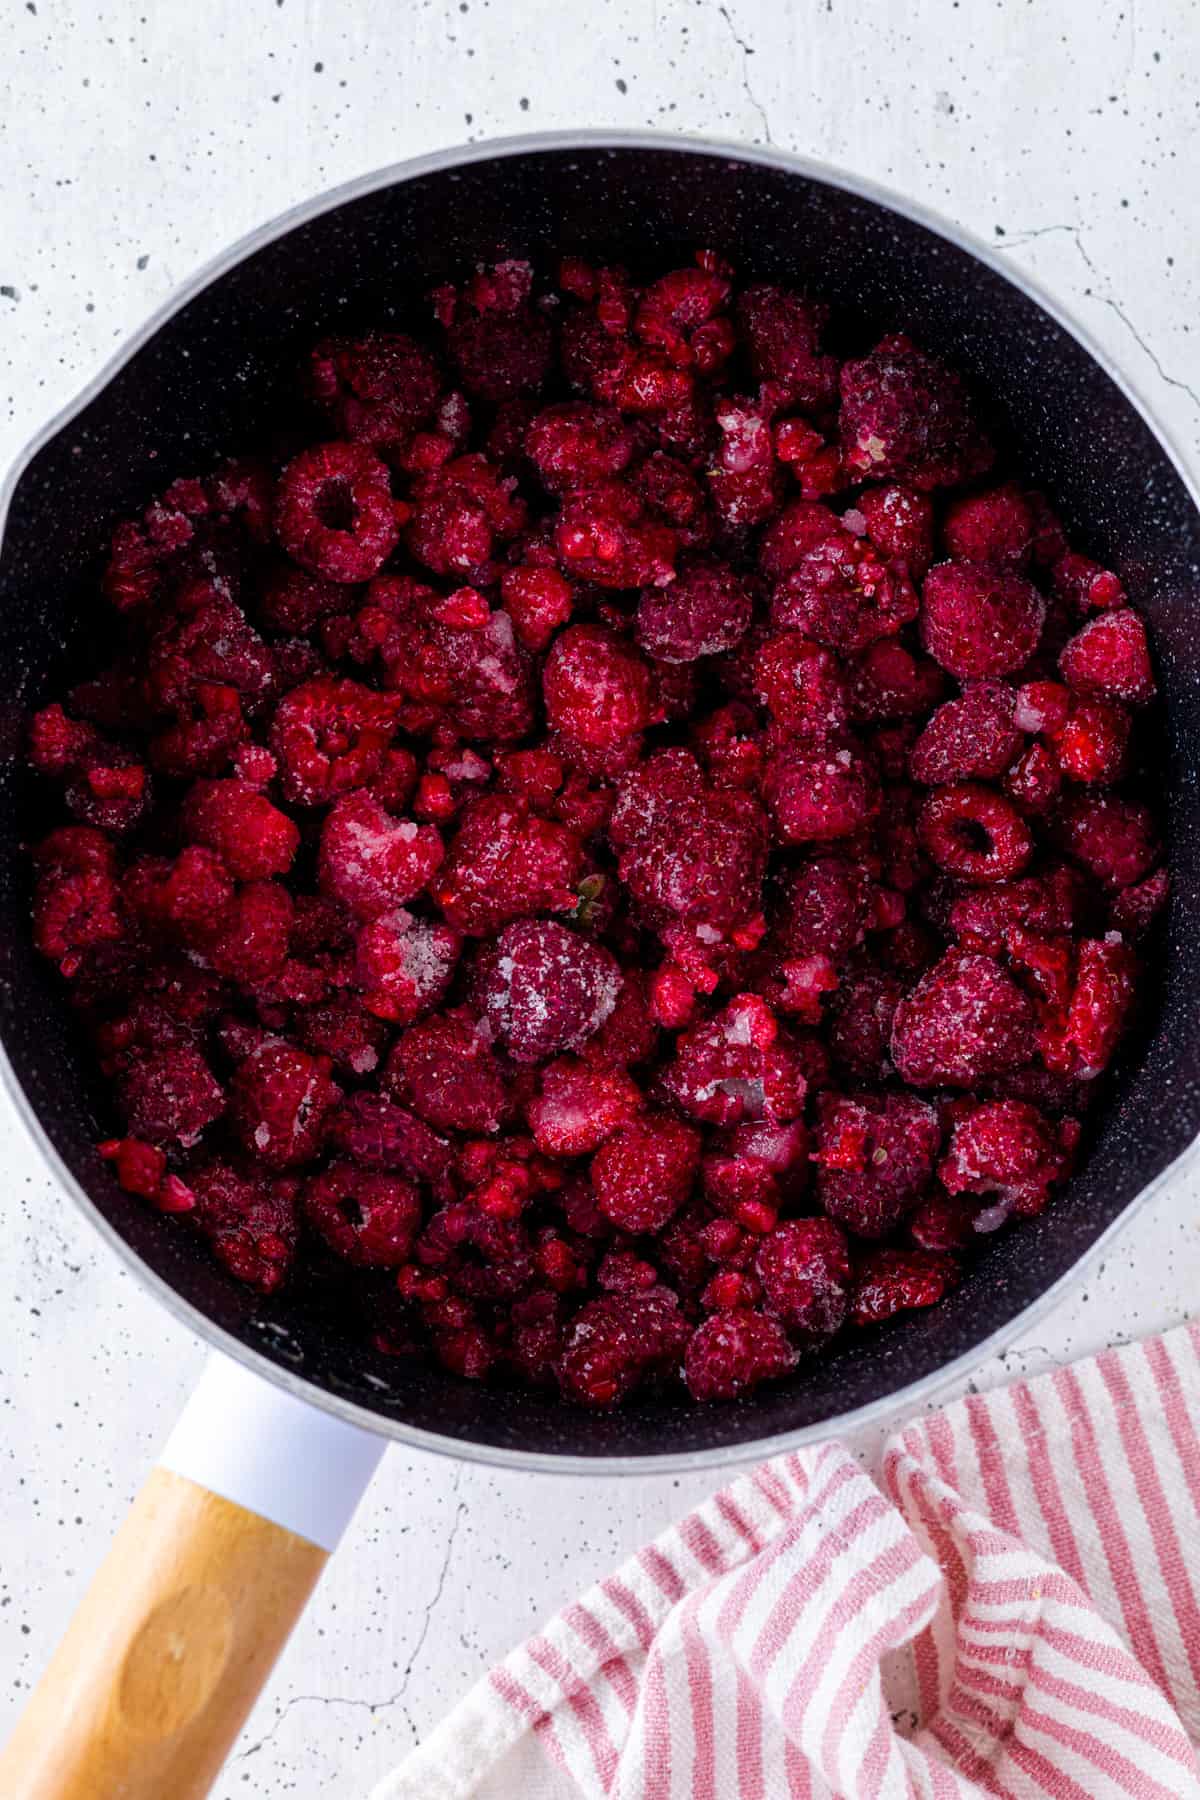 Raspberries tossed in sugar and lemon juice in a saucepan.